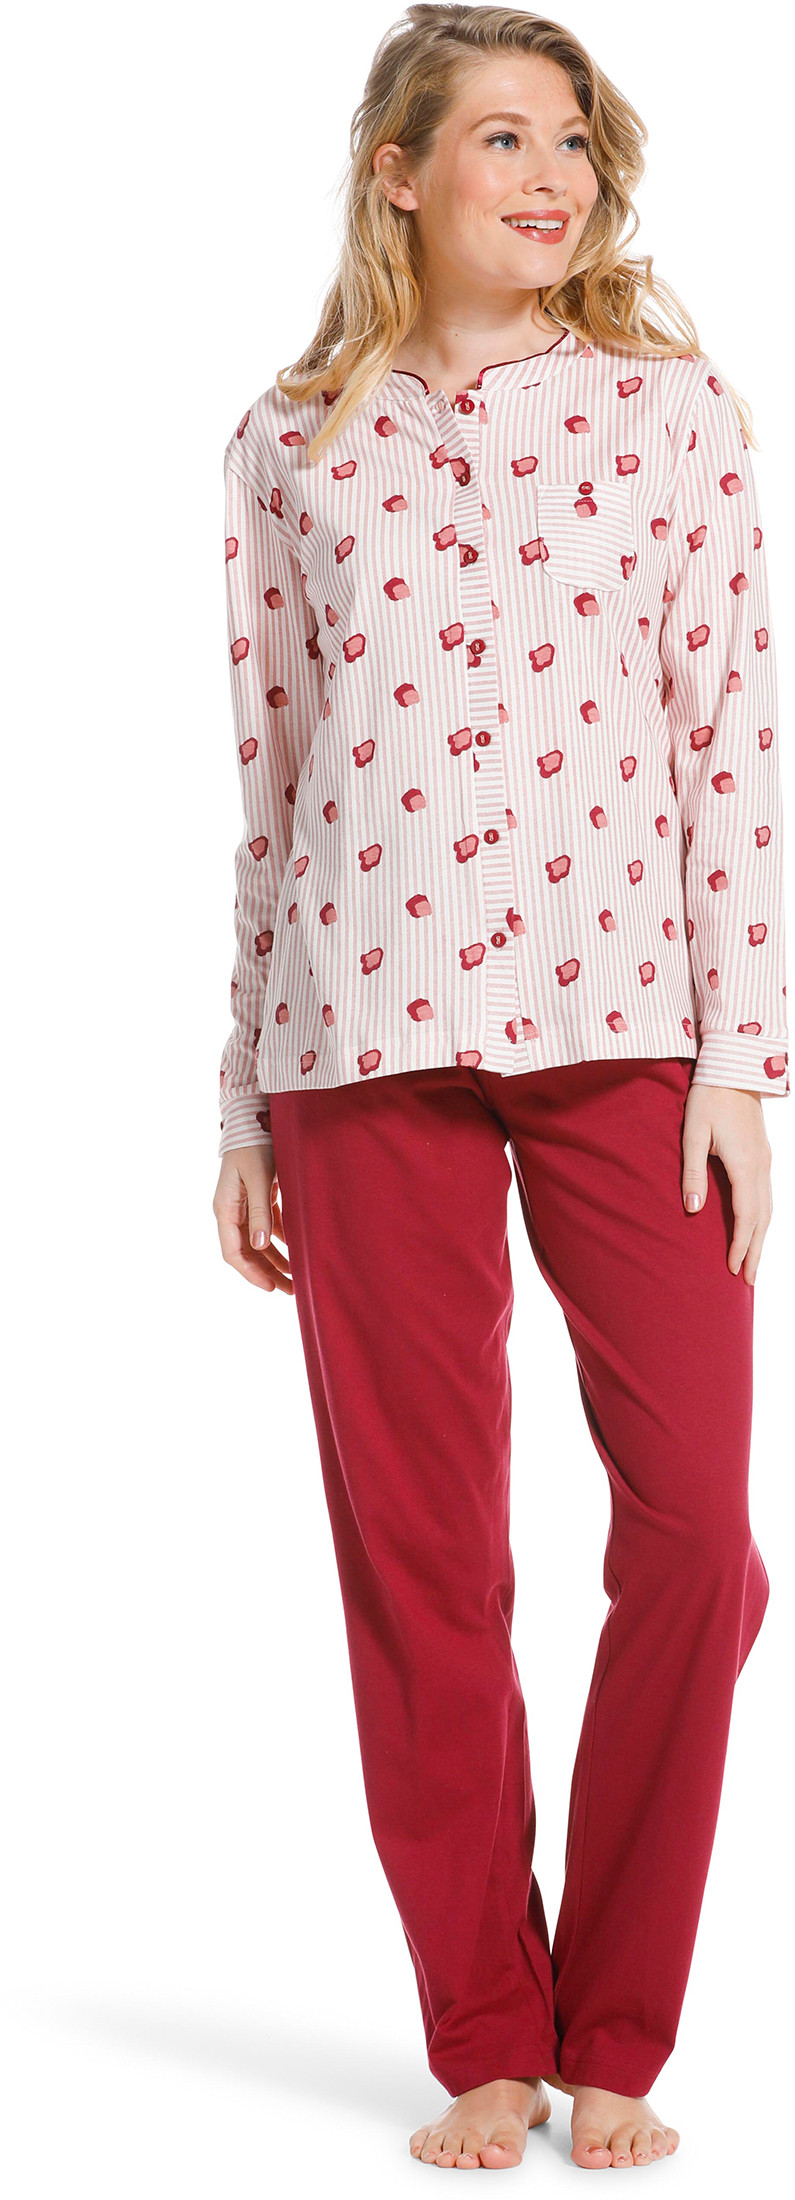 Pastunette doorknoop dames pyjama 20222-104-6-42